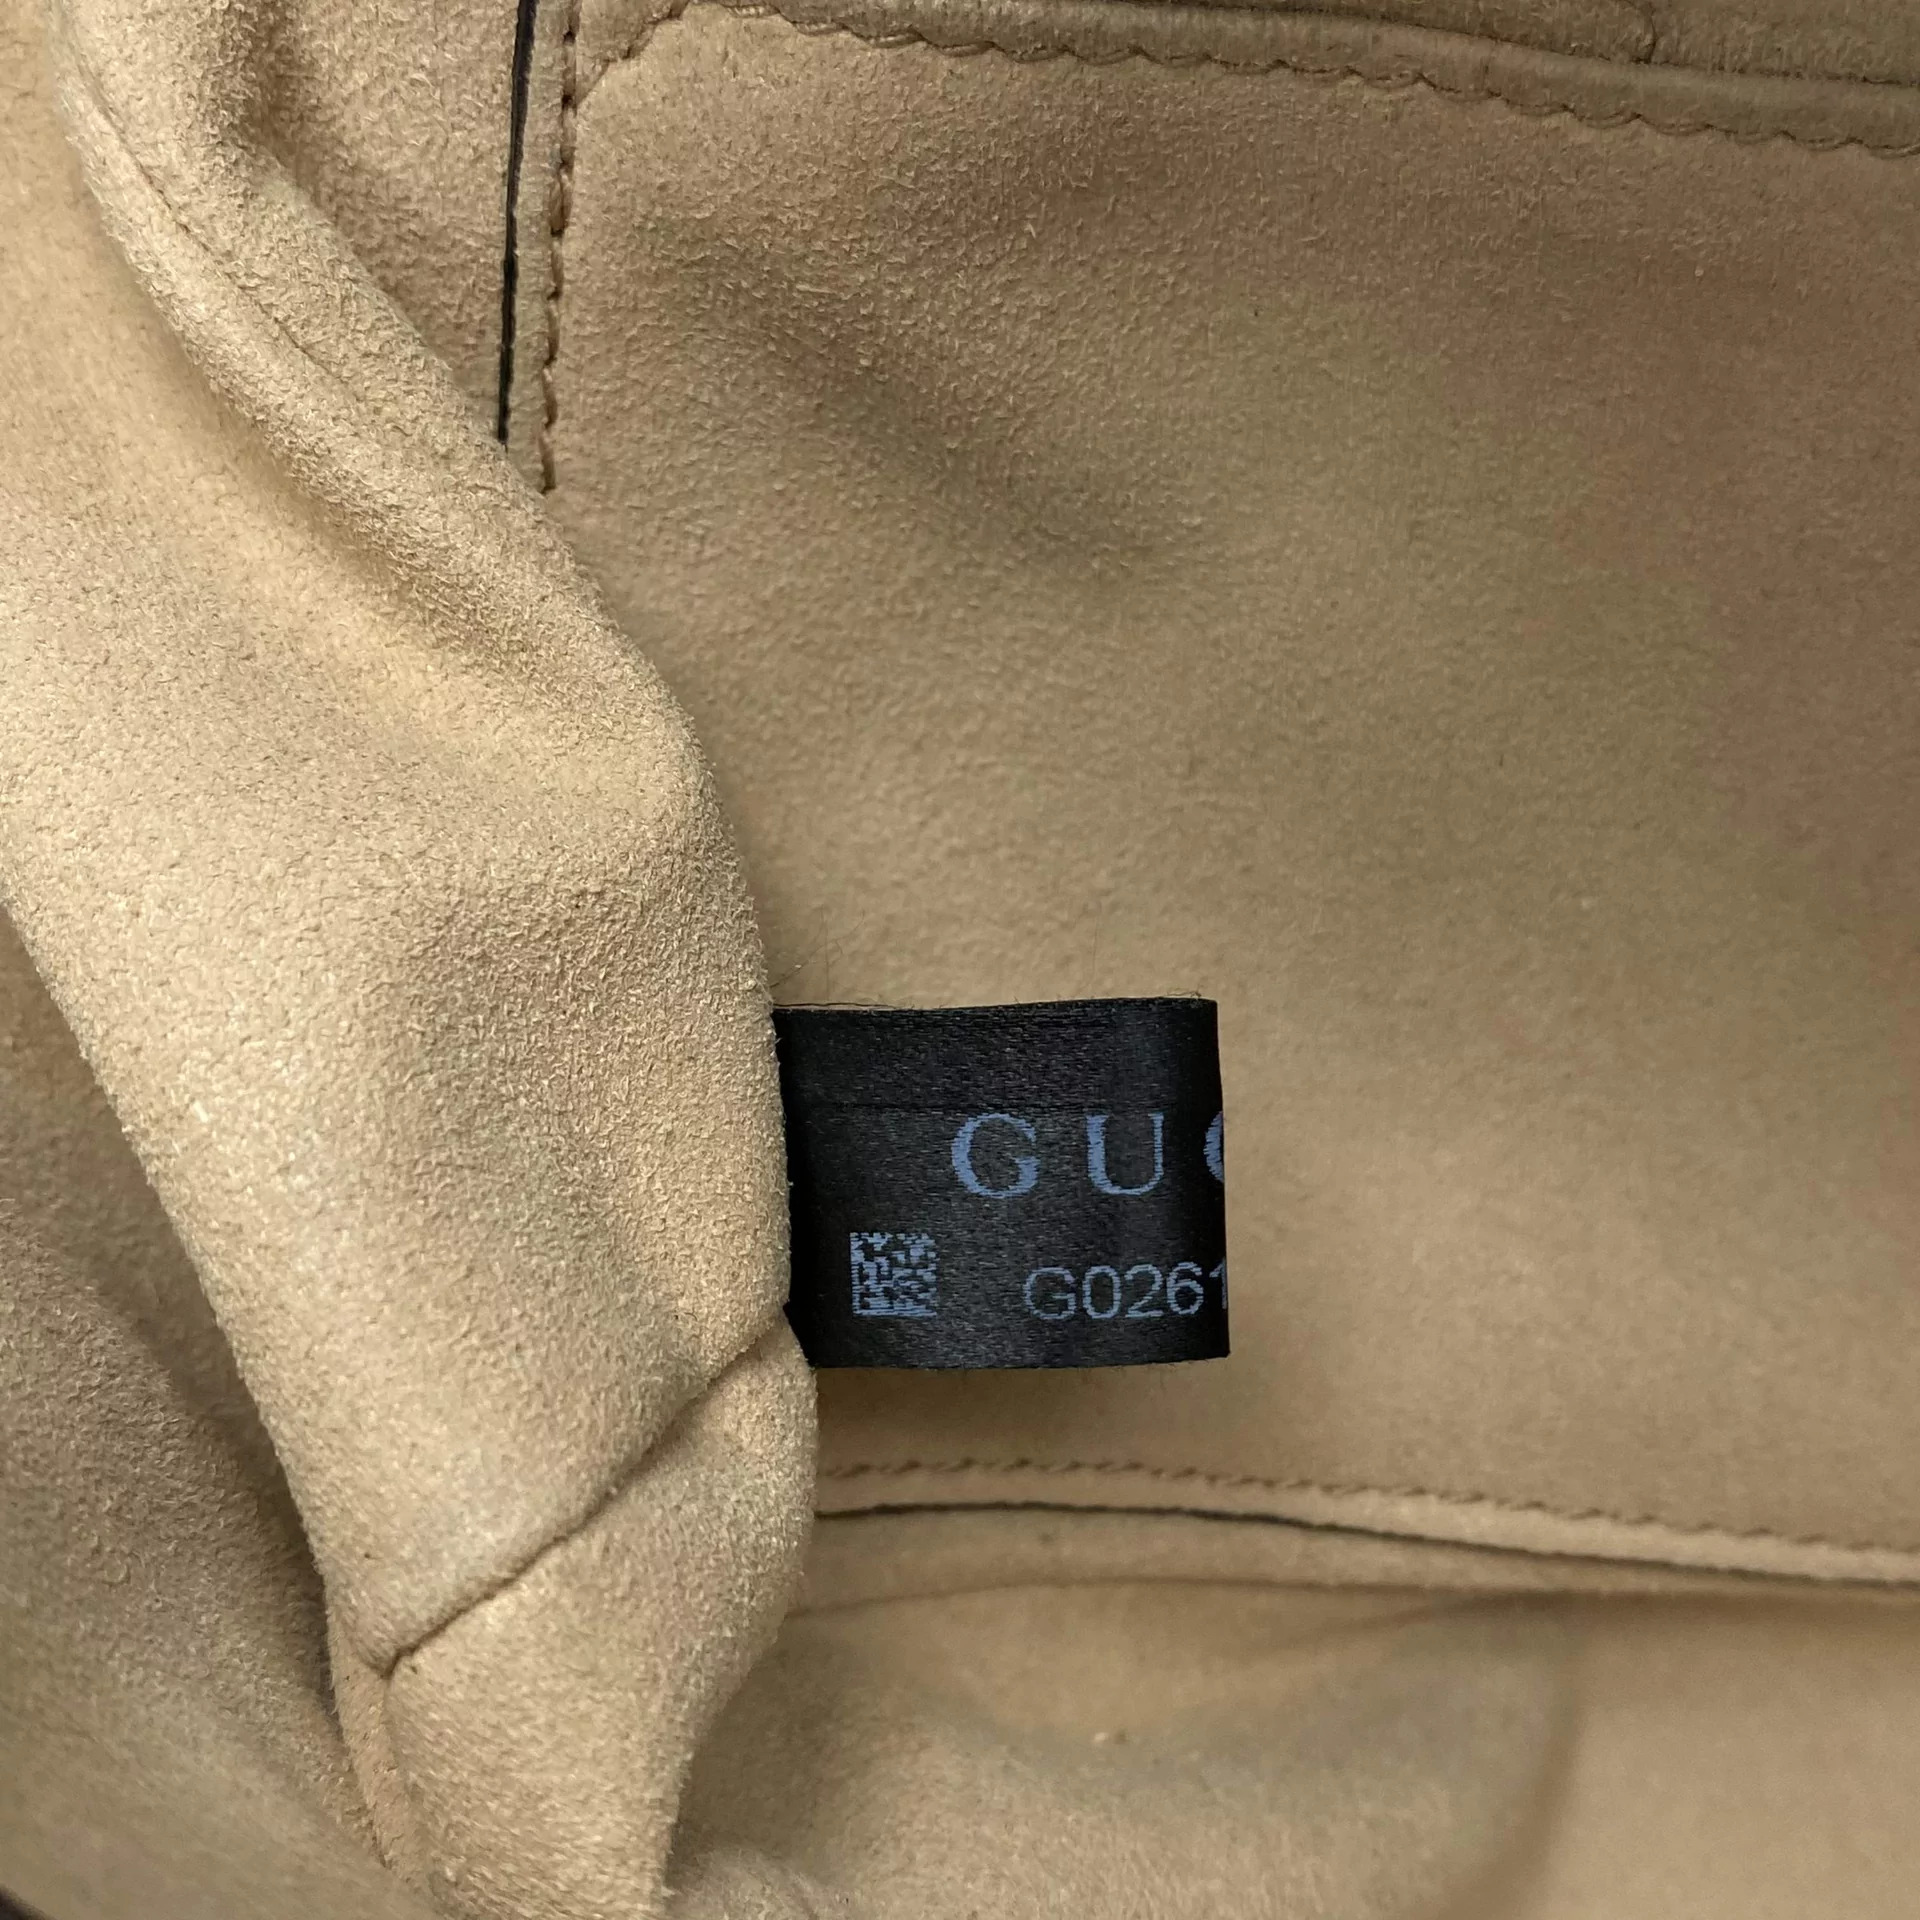 Bolsa Gucci GG Marmont Mini